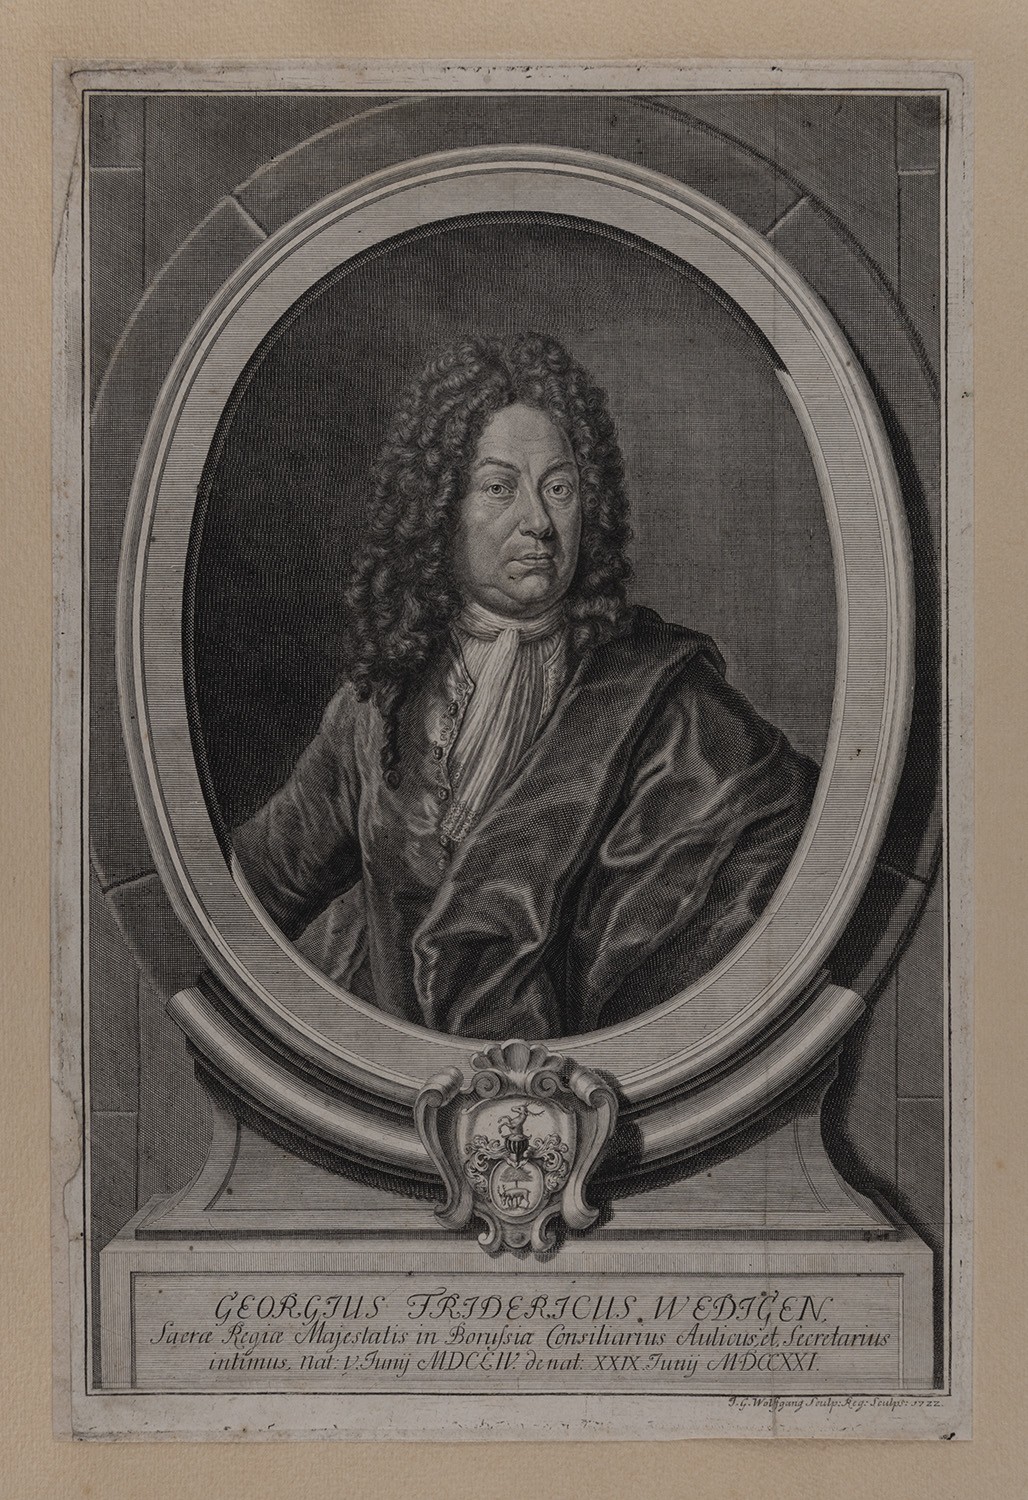 Wedigen, Georg Friedrich (1654-1721), preußischer Hofbeamter (Landesgeschichtliche Vereinigung für die Mark Brandenburg e.V., Archiv CC BY)